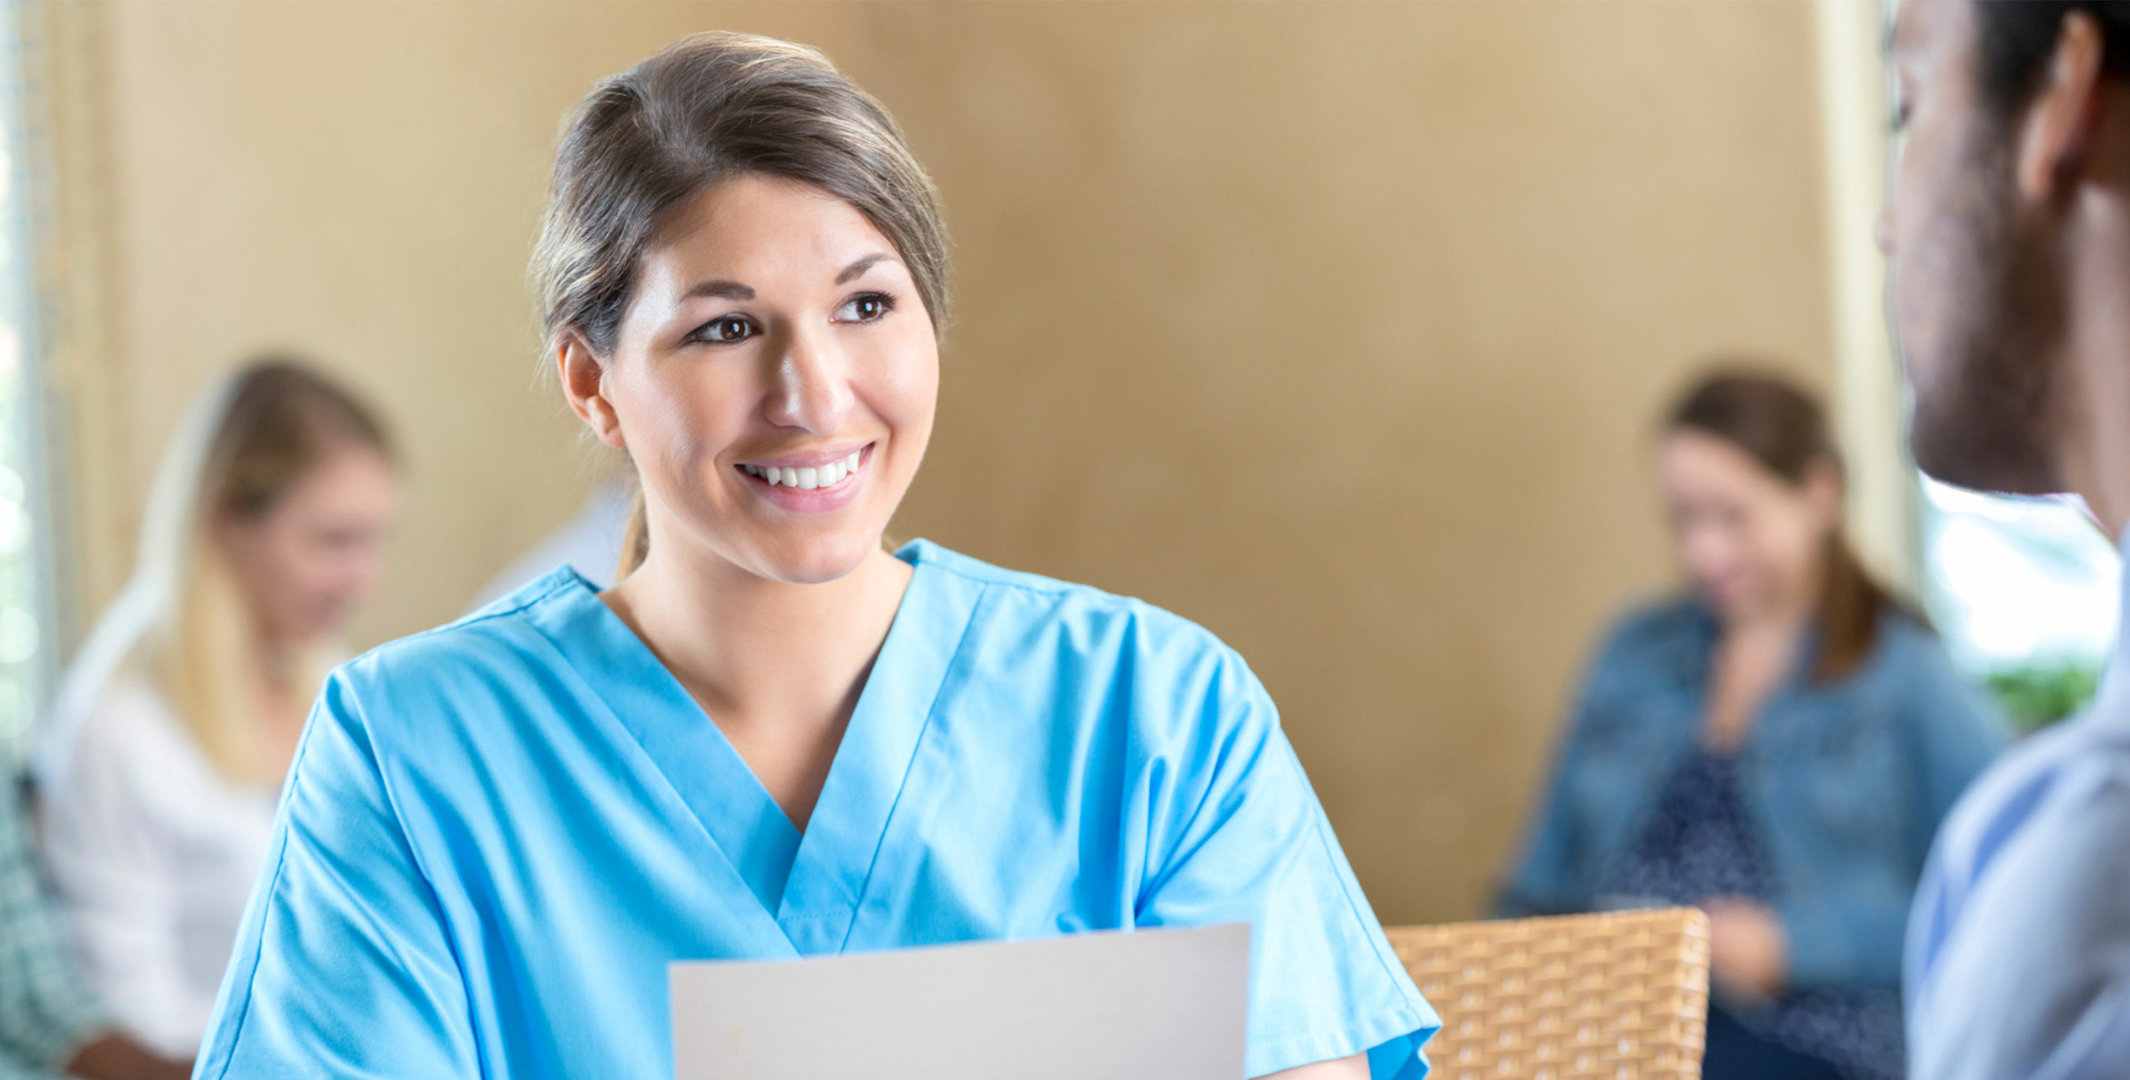 Medical Professional Women Smiling behind Front Desk